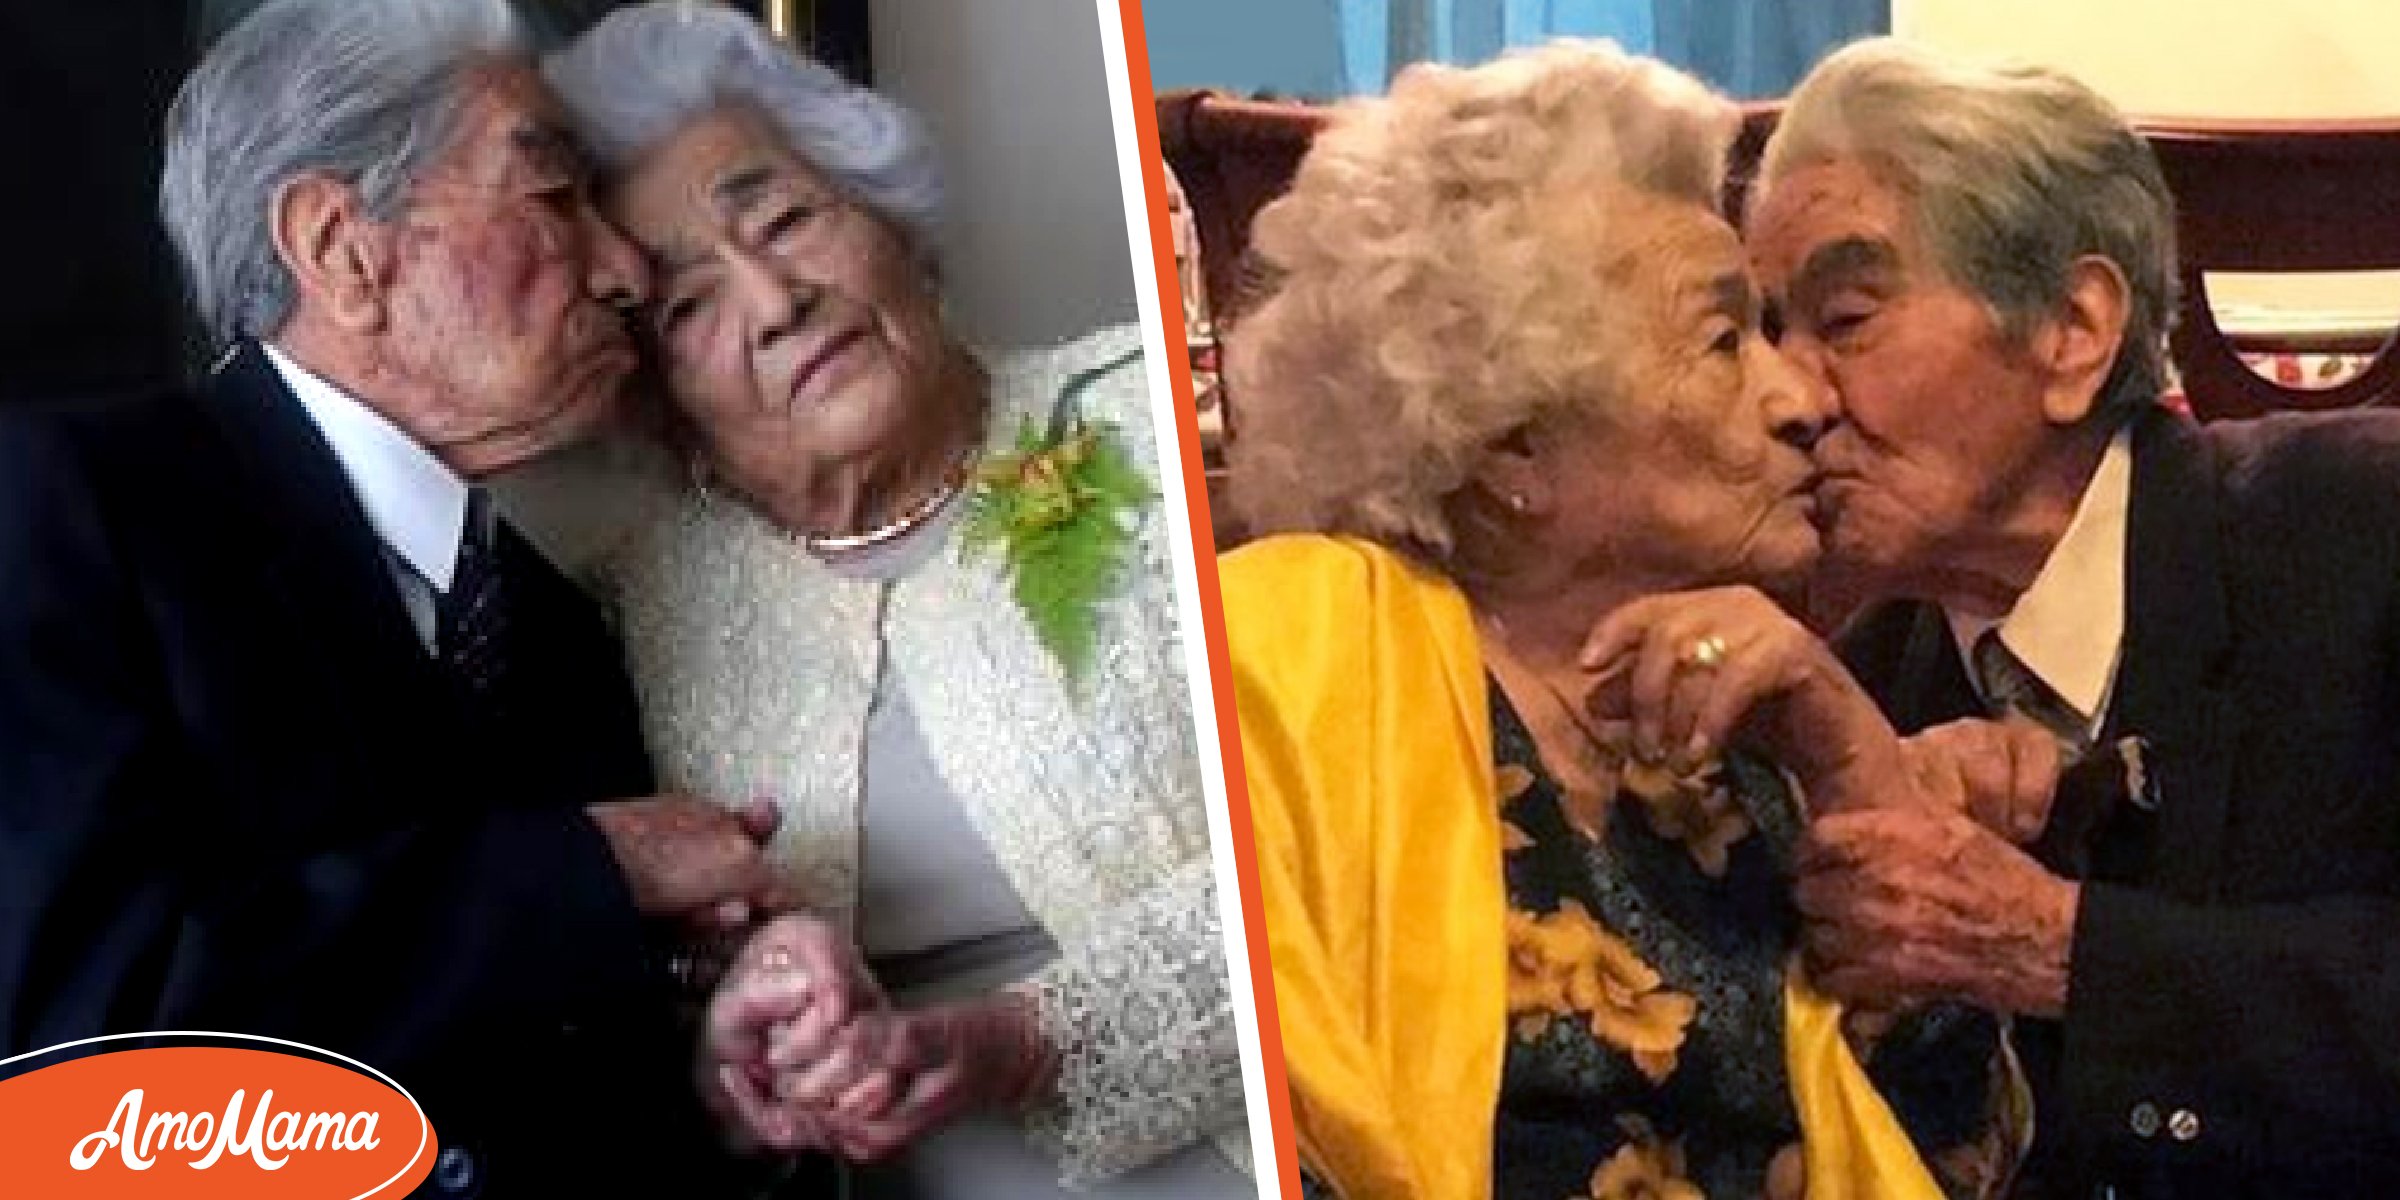 Des époux sont devenus le plus vieux couple au monde 79 ans après s’être enfuis pour se marier en secret